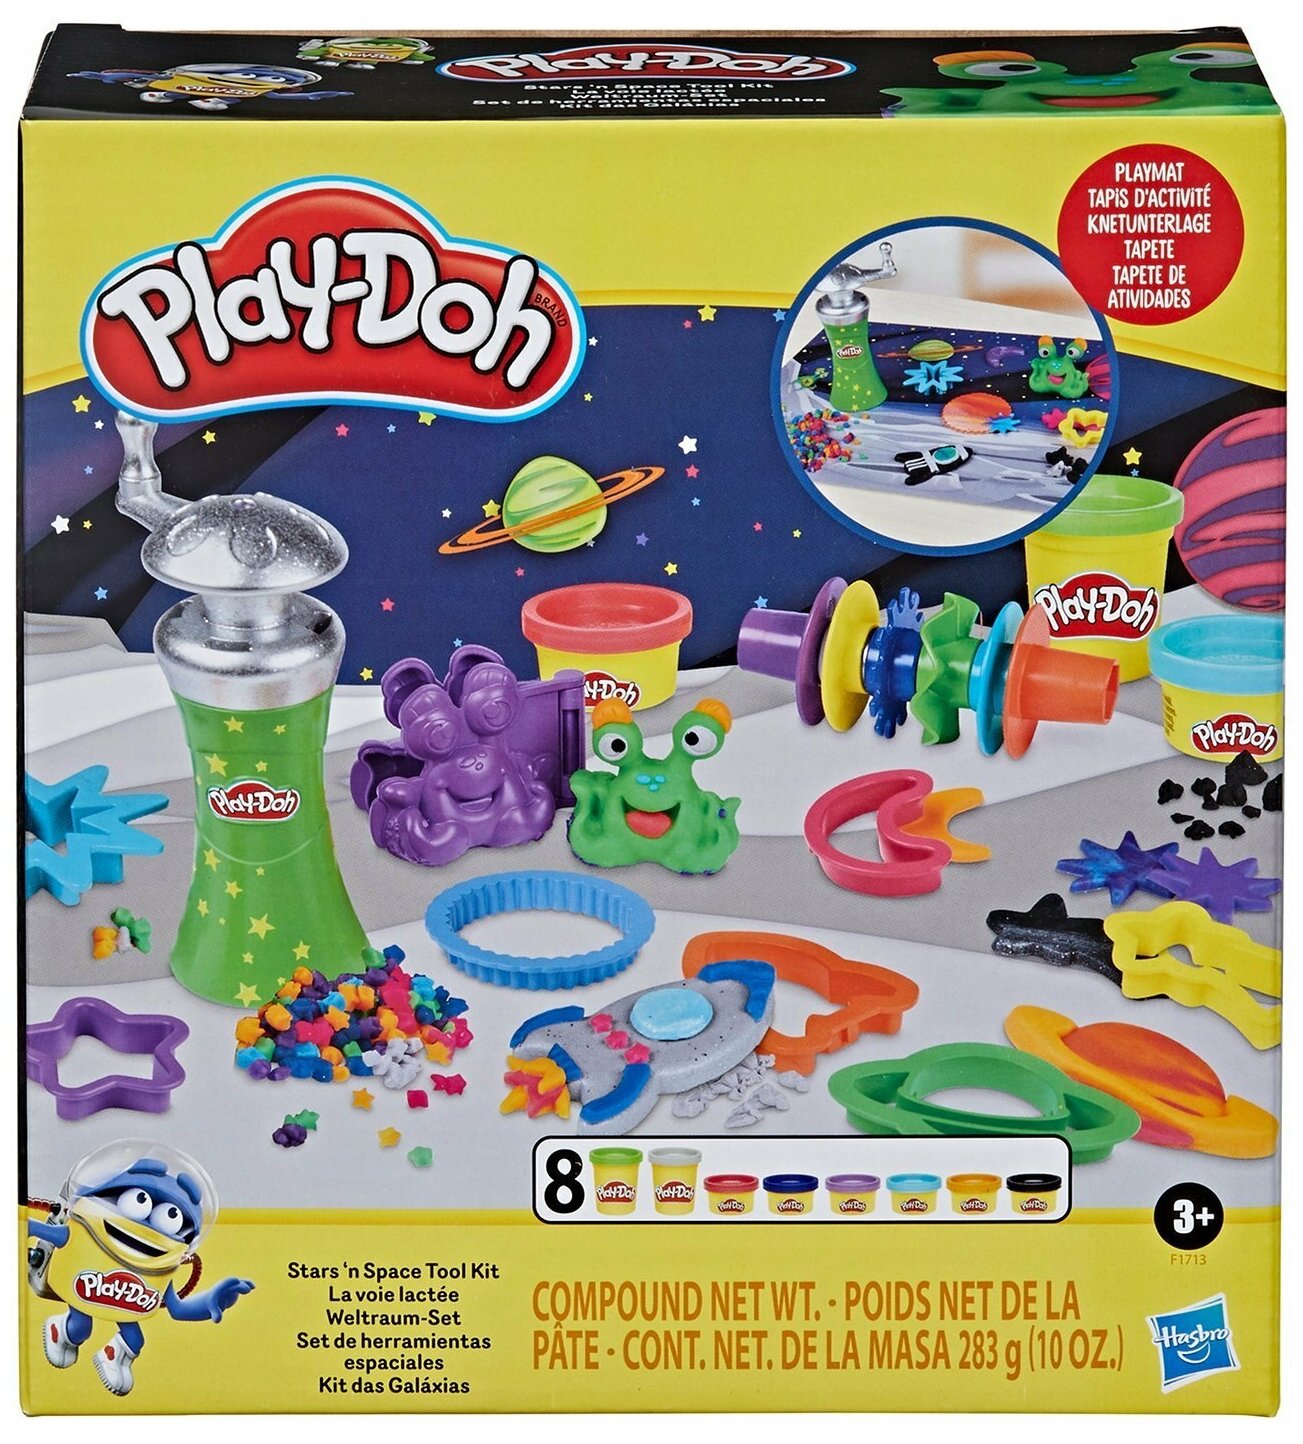 Play-Doh Игровой набор "Космос", F17135L0